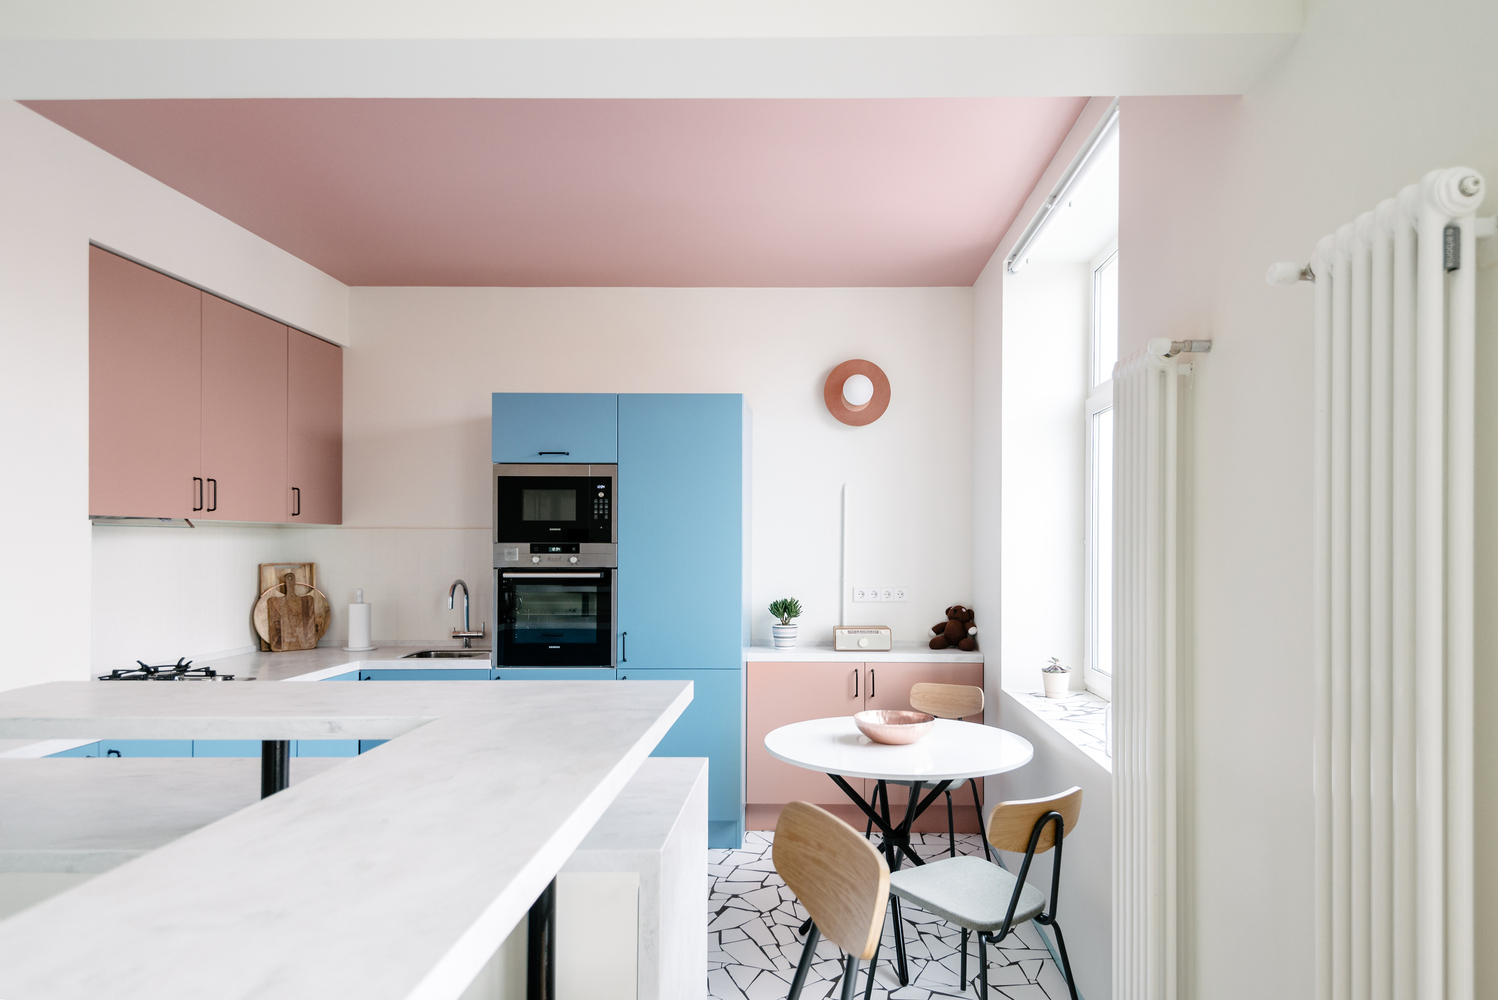 Các gam màu xanh lam và hồng phấn được sử dụng để làm nổi bật phòng bếp cũng như khu vực ăn uống. Đặc biệt, trần phòng bếp sơn hồng “tạo khối, tạo nét tương phản nhẹ nhàng với màu trắng chủ đạo của phòng khách và lối ra vào.